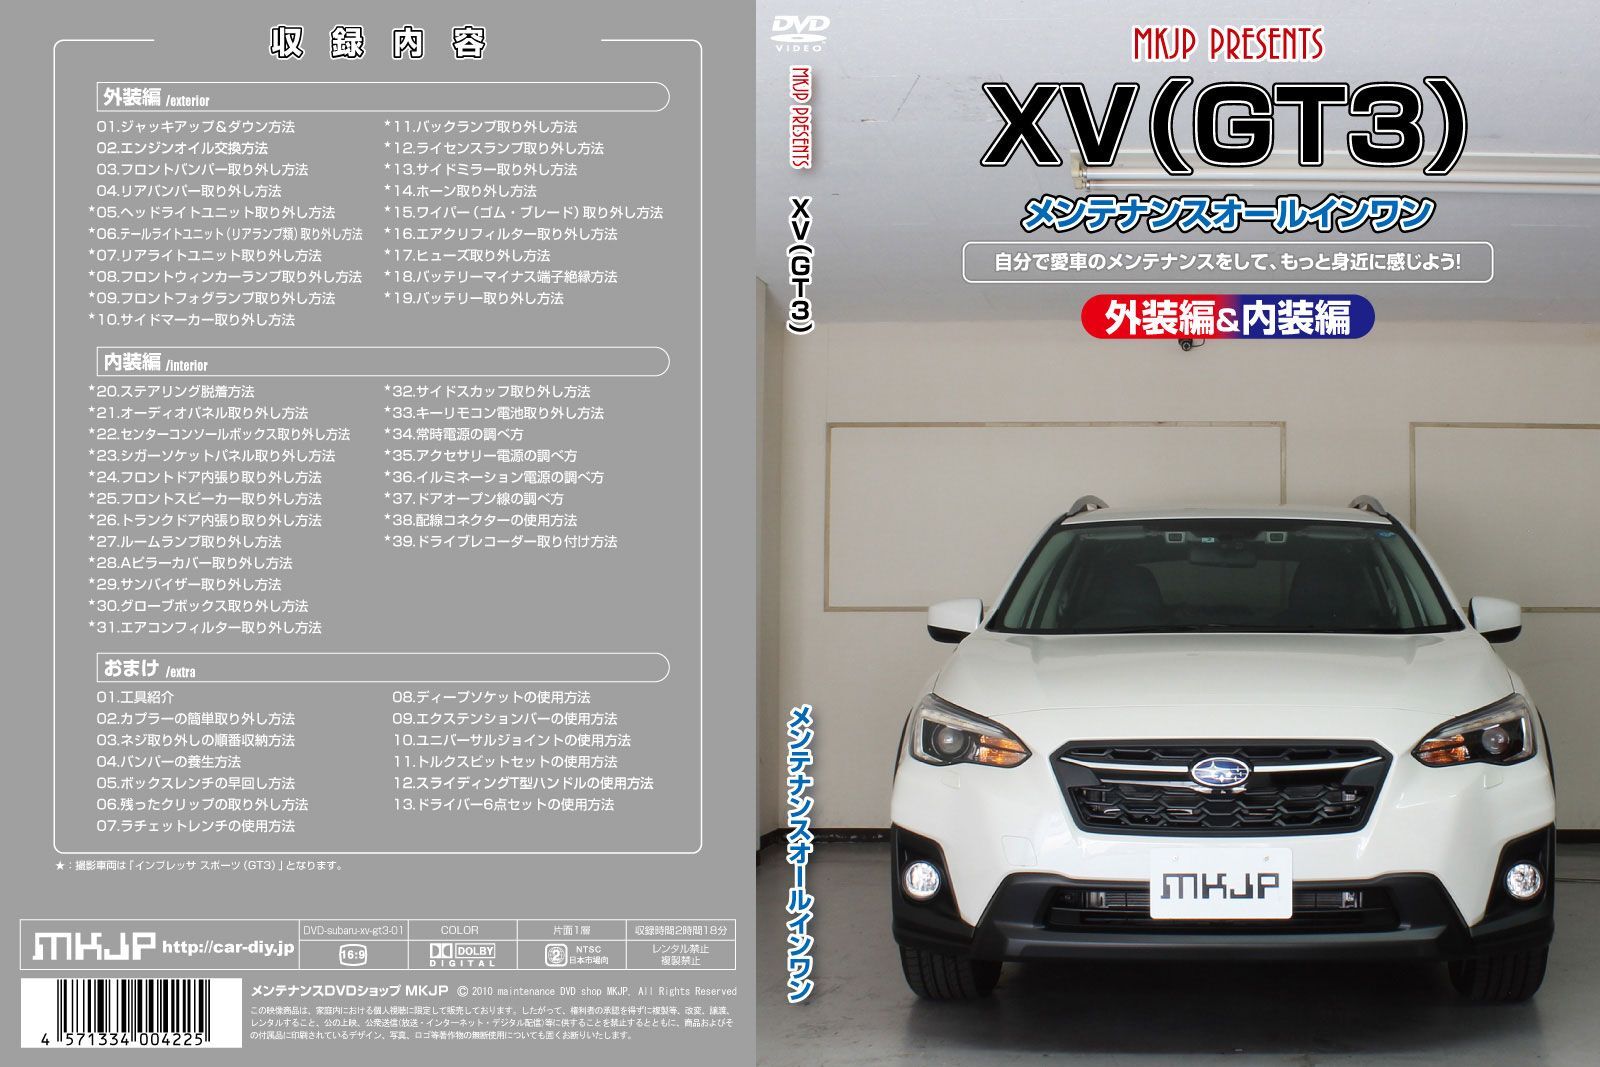 初心者向け車メンテナンスdvd スバル Xv Gt3用 を新たにリリース 日常整備 パーツの取り外しを動画で解説 Mkjpのプレスリリース